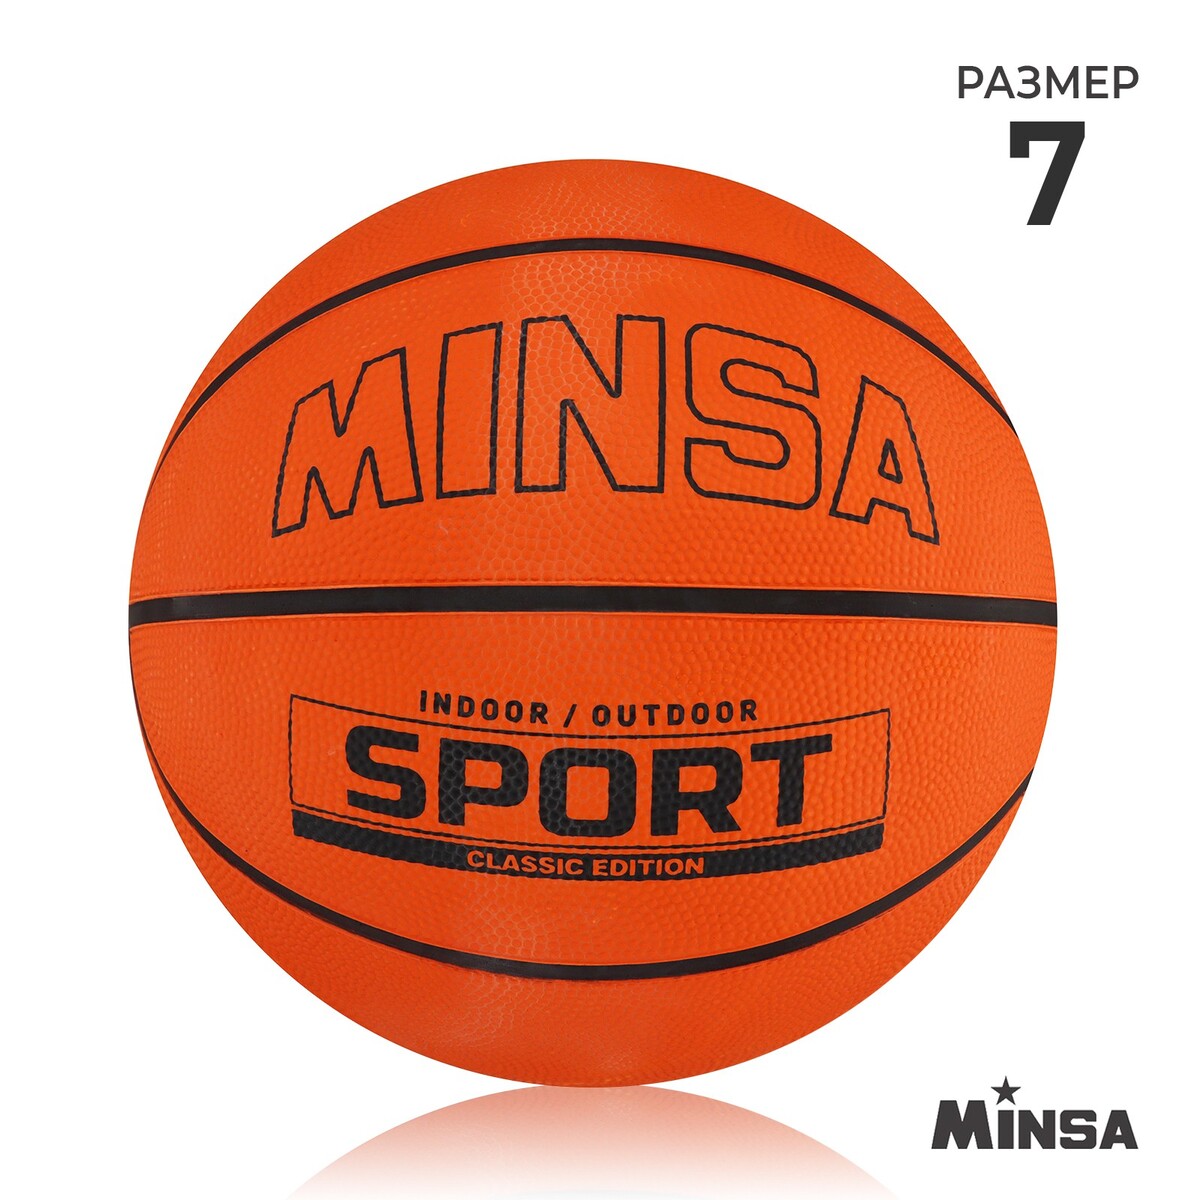 Мяч баскетбольный minsa sport, пвх, клееный, 8 панелей, р. 7 мяч баскетбольный minsa sport пвх клееный 8 панелей р 7